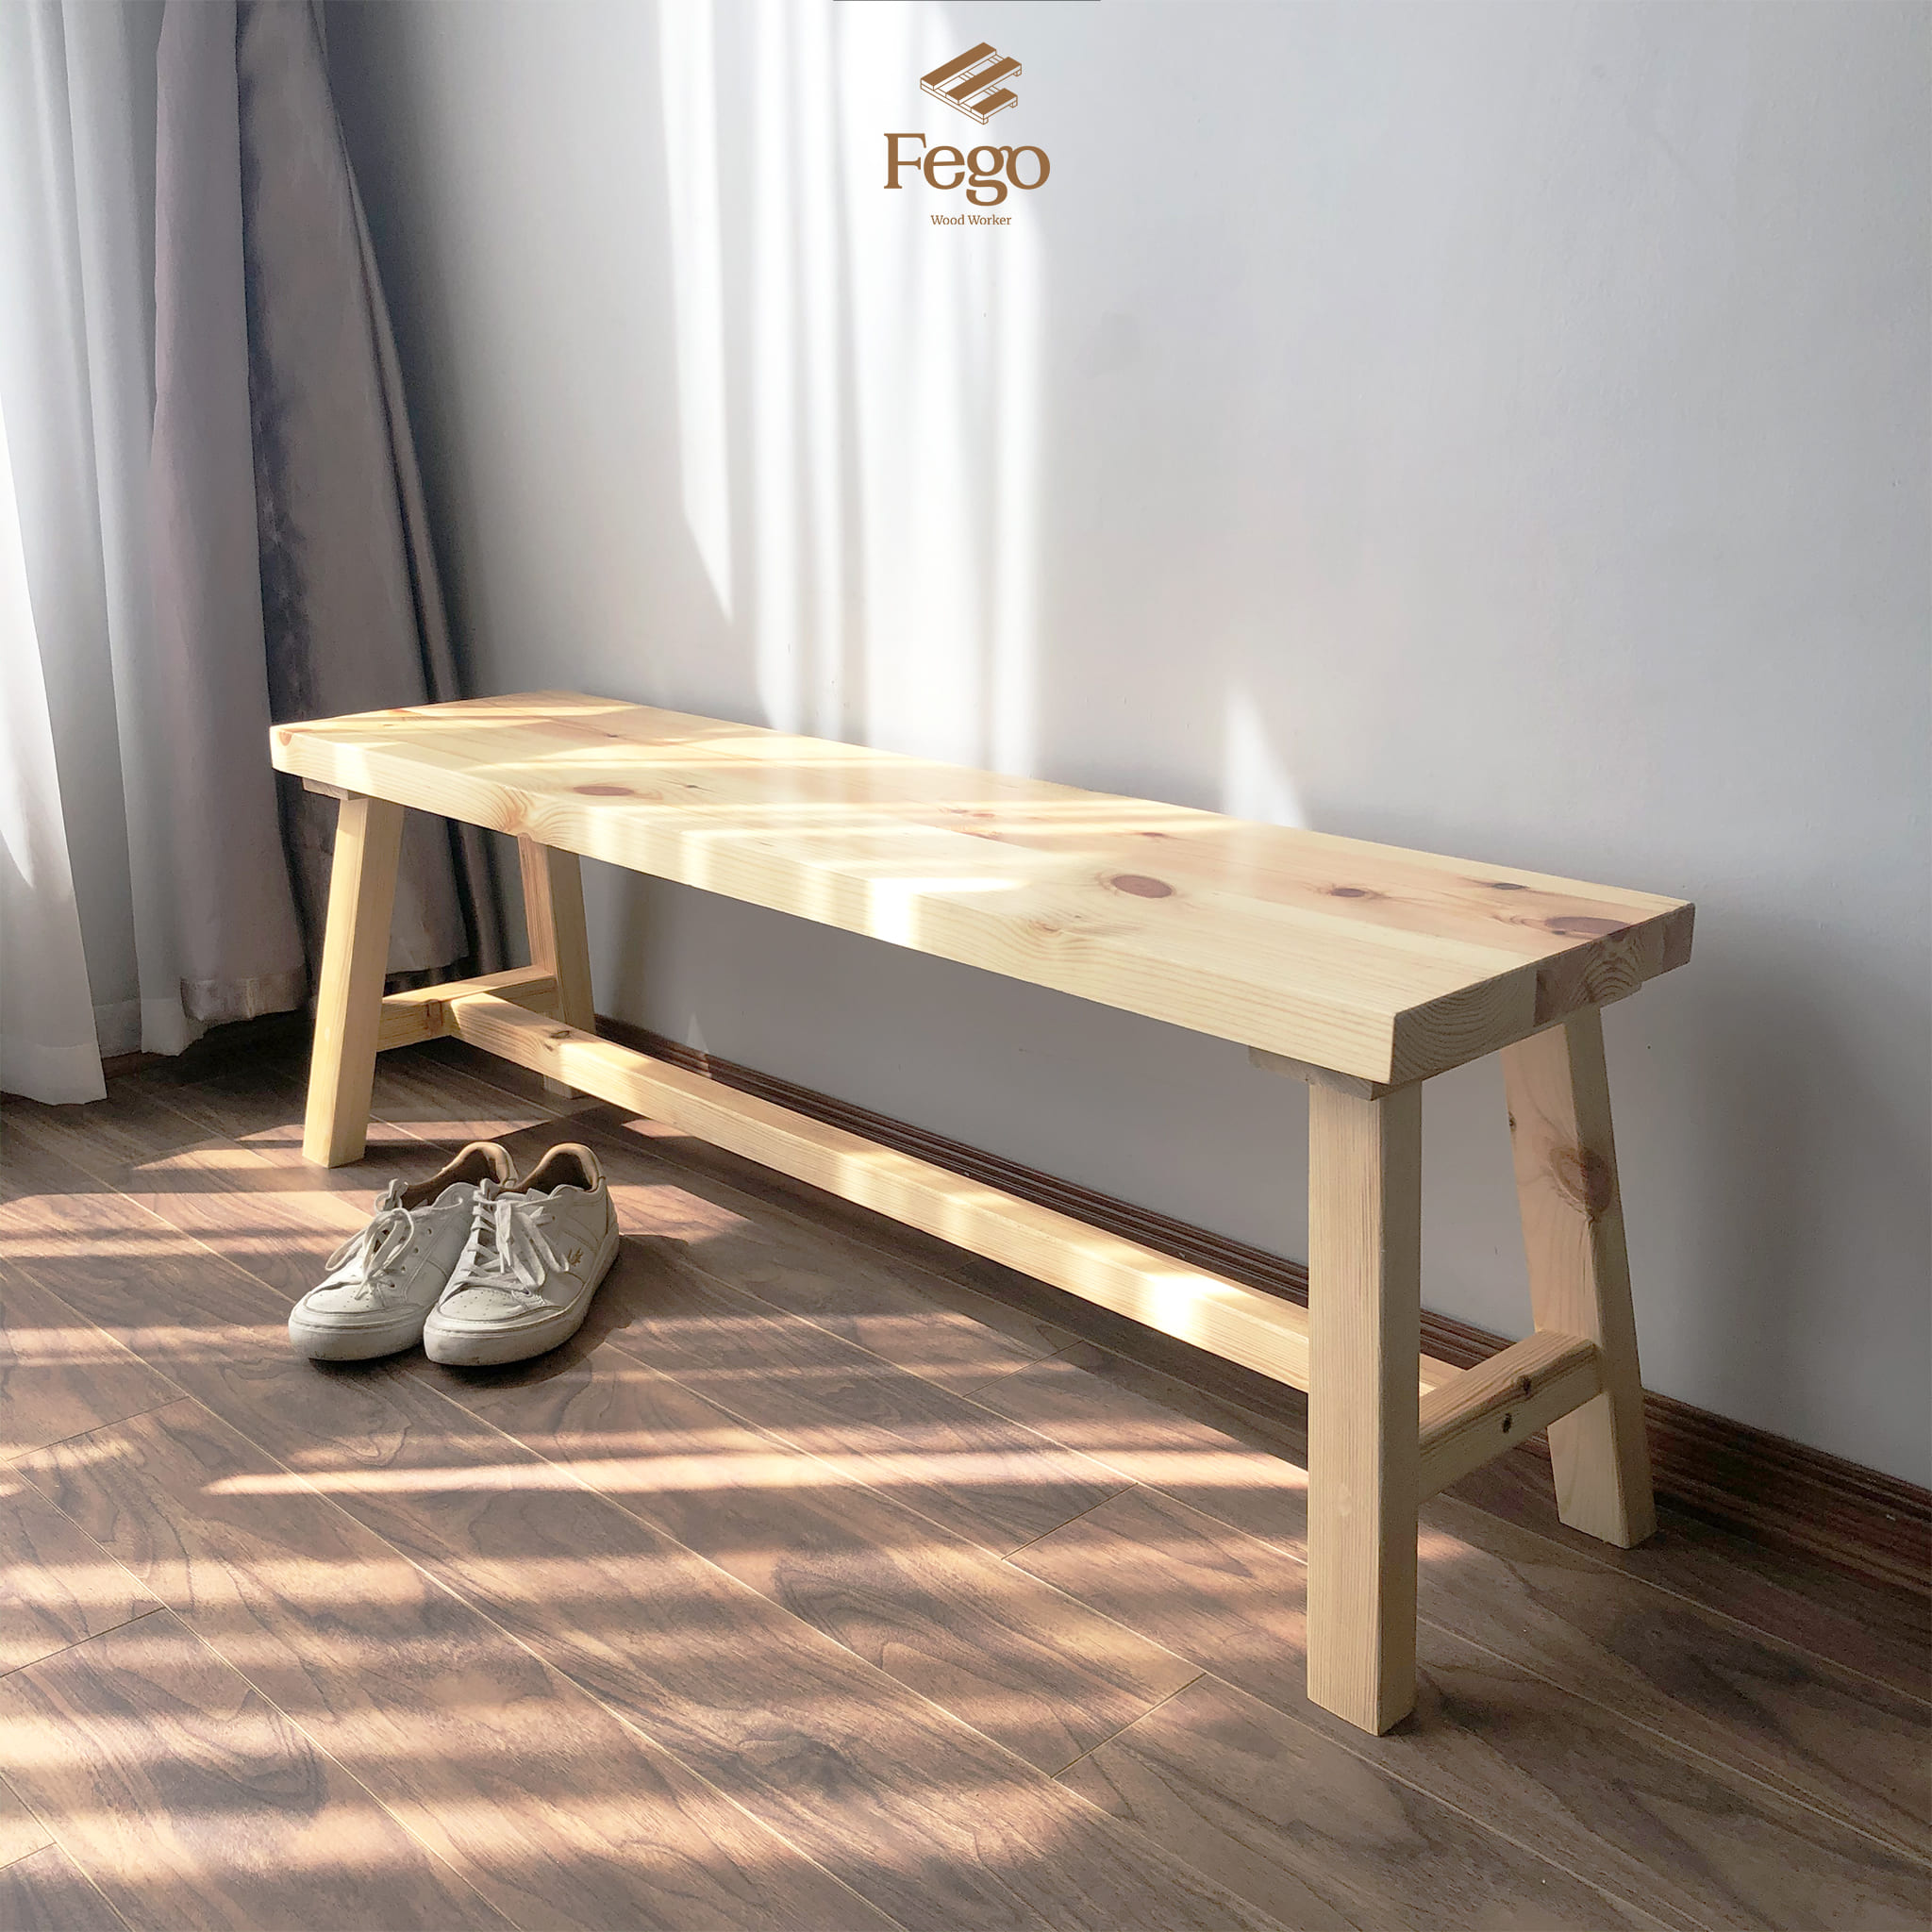 Ghế băng dài FEGO bằng gỗ tự nhiên cao 45cm để ban công, hành lang đi giày